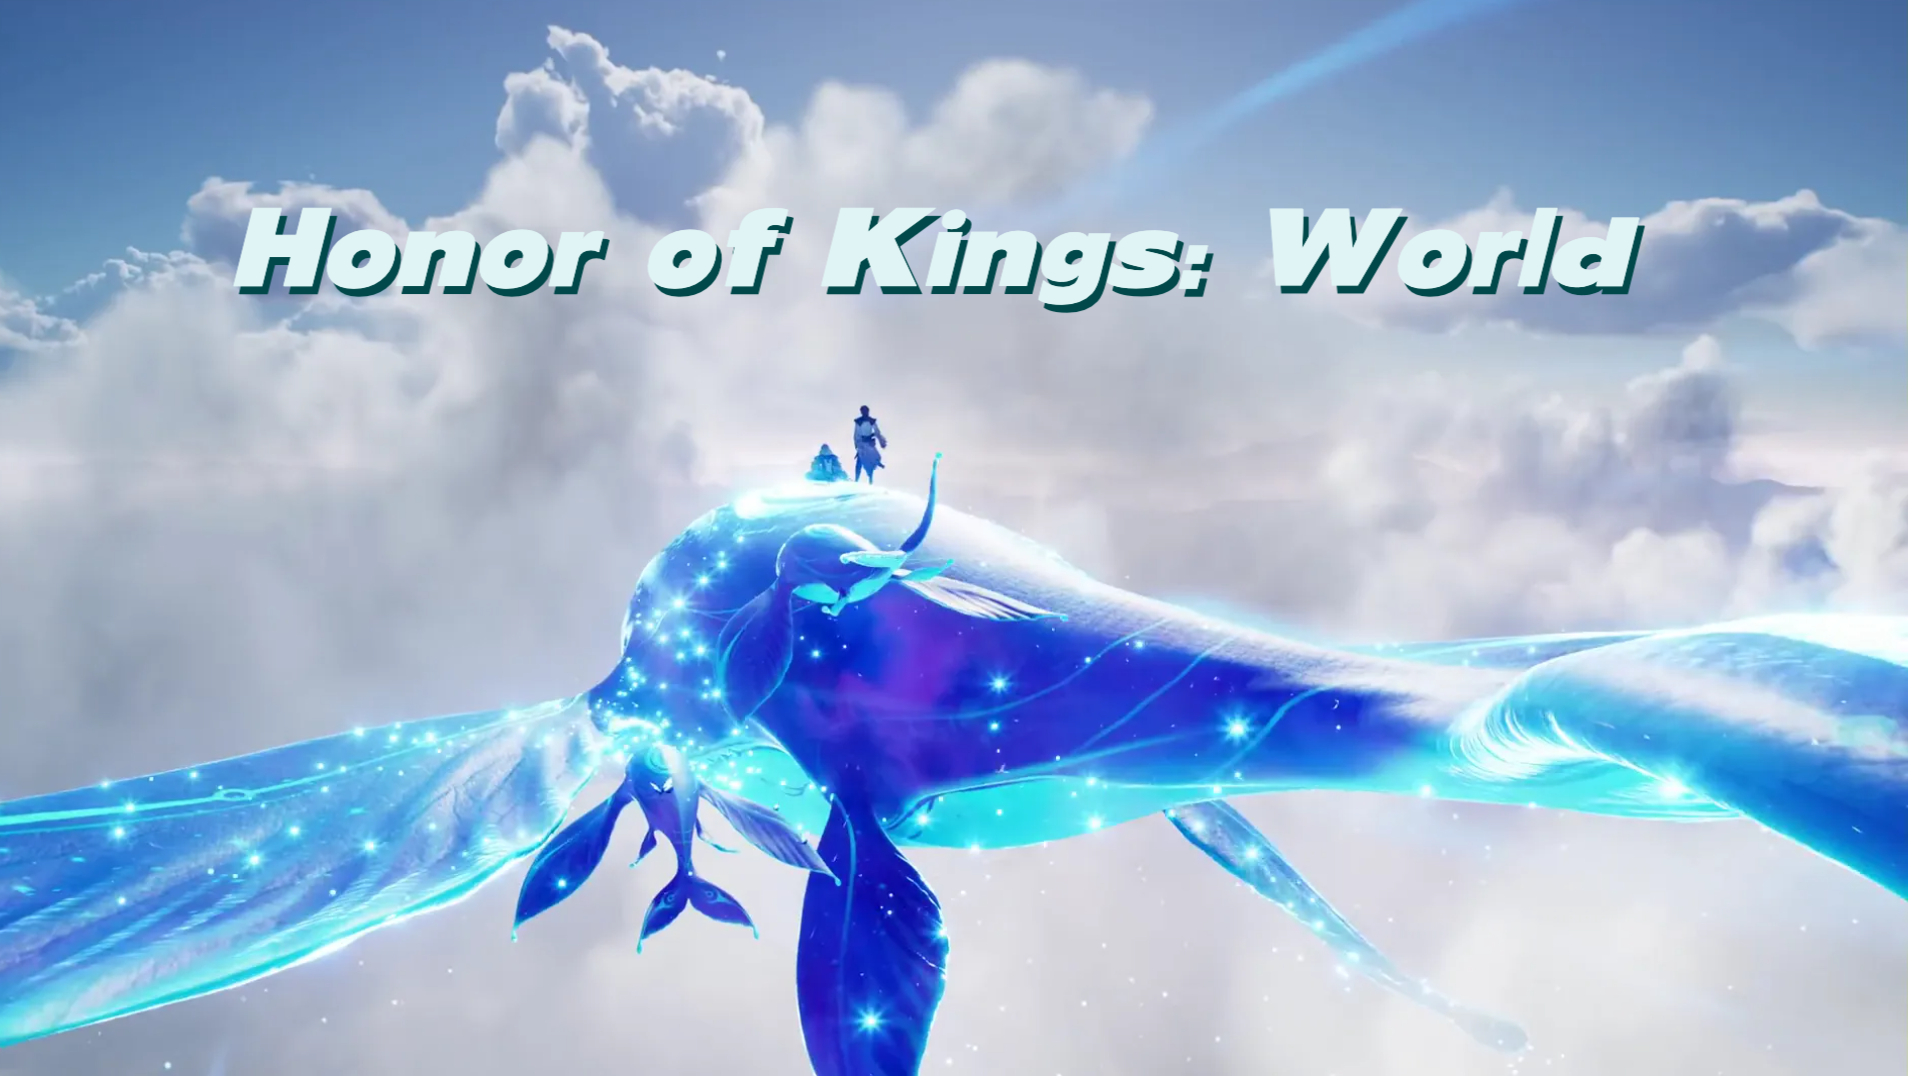 Honor of Kings: Global Release Coming Soon